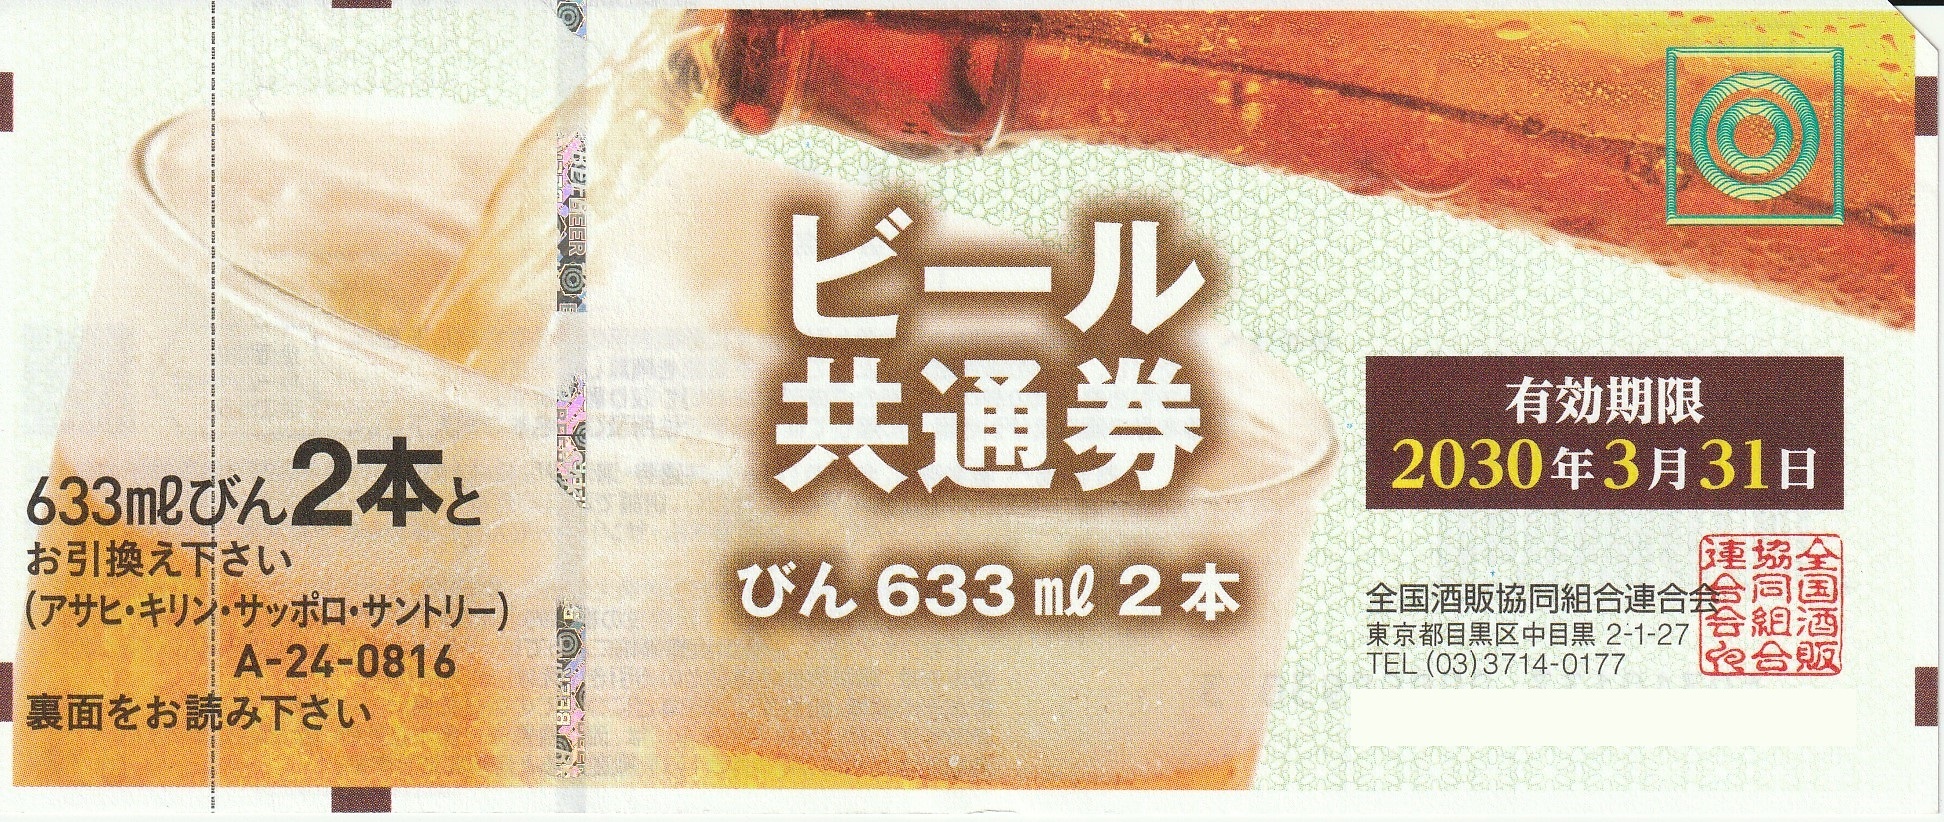 【期限切れ】ビール共通券/36枚